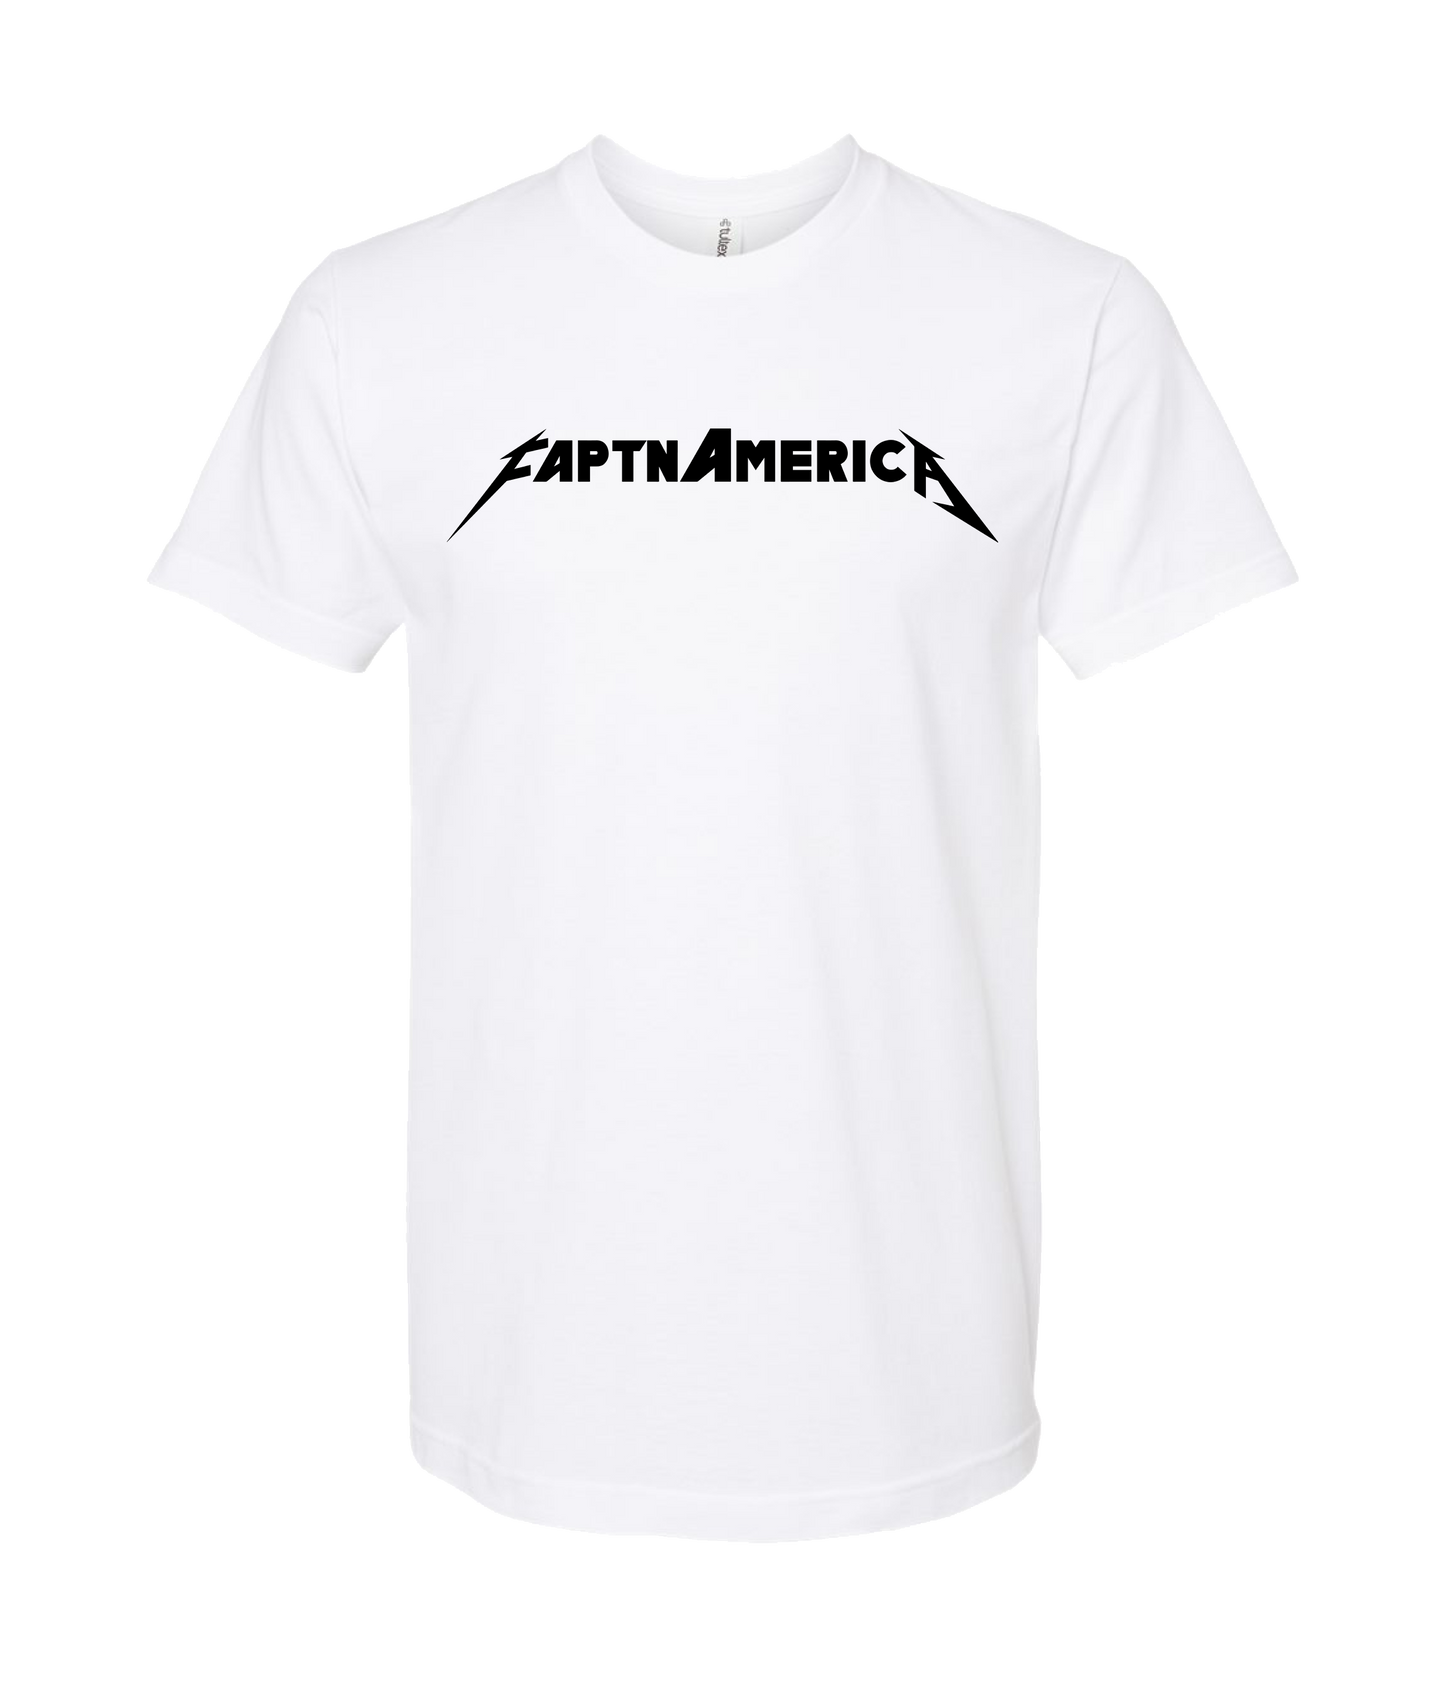 FaptnAmerica - Faptn METAL - White T Shirt